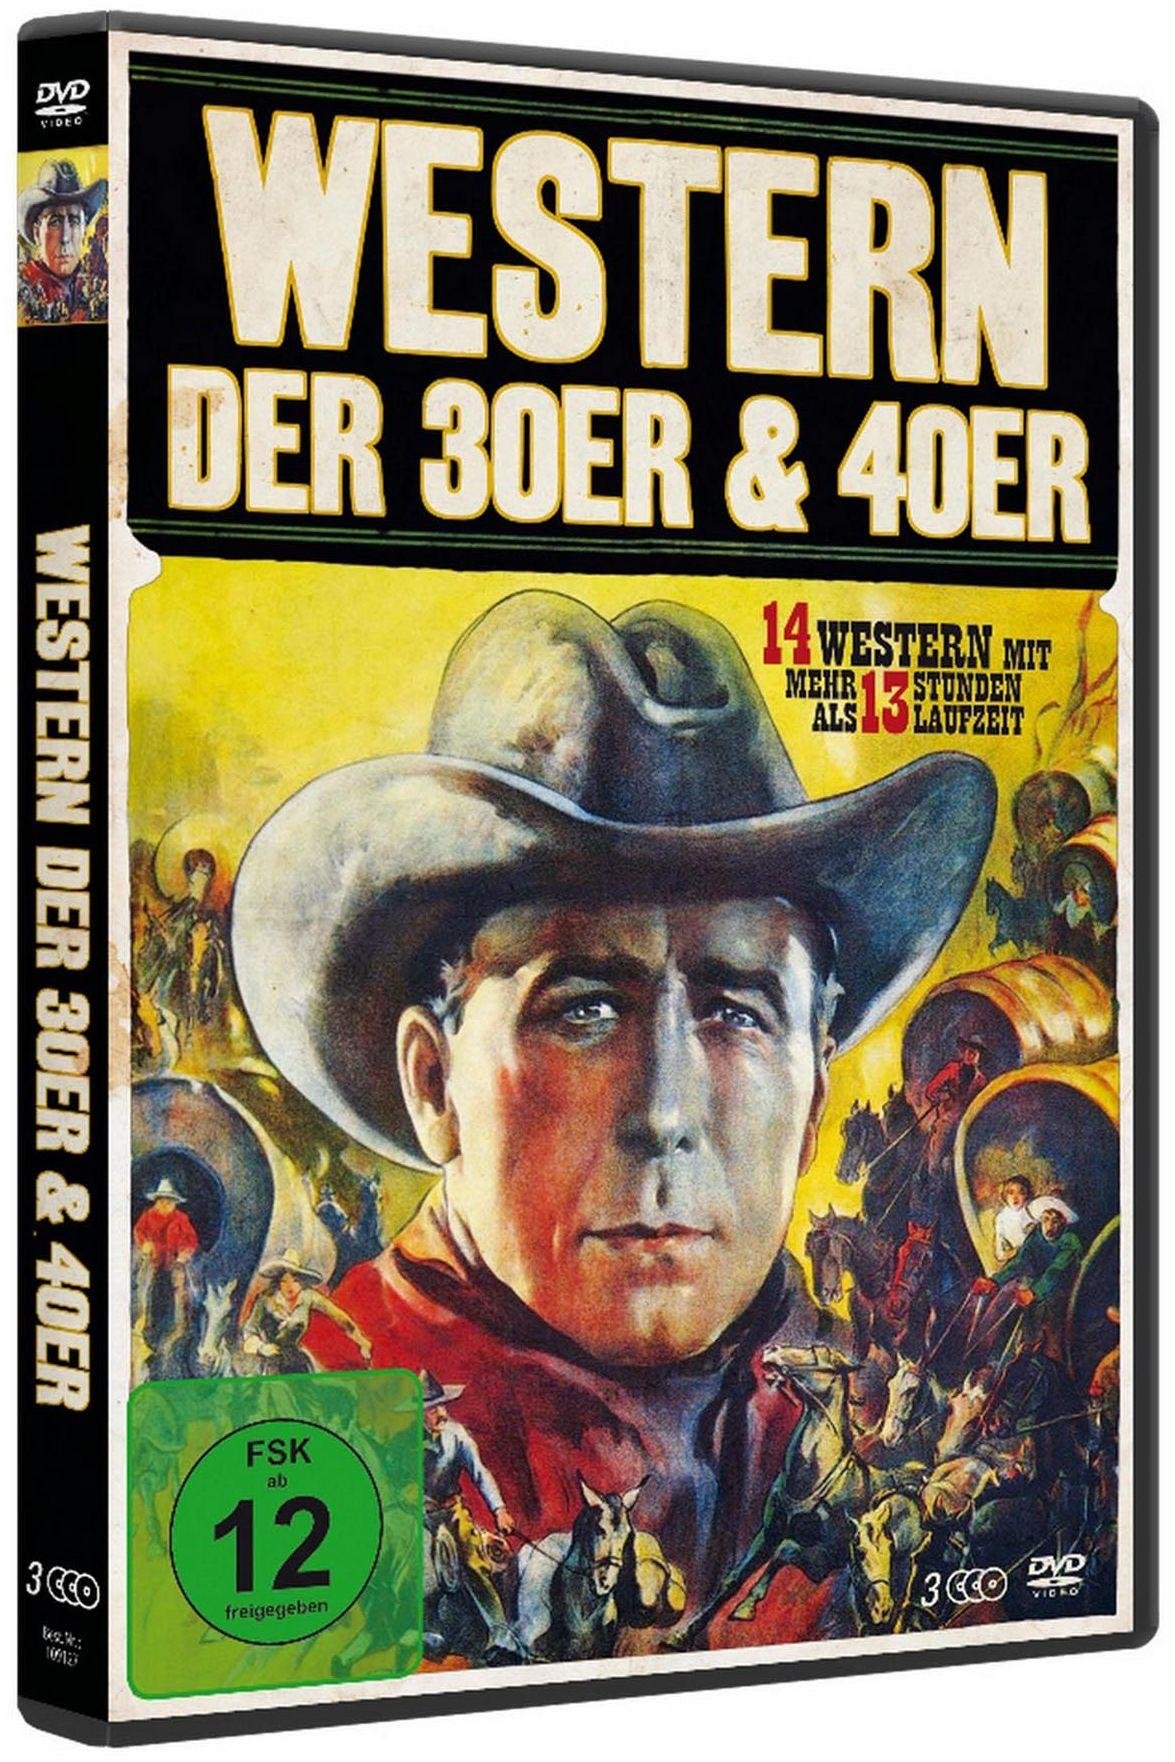 Western Box Vol. 1 - Best of 30er & 40er Jahre (3 DVD-Edition)  (DVD)